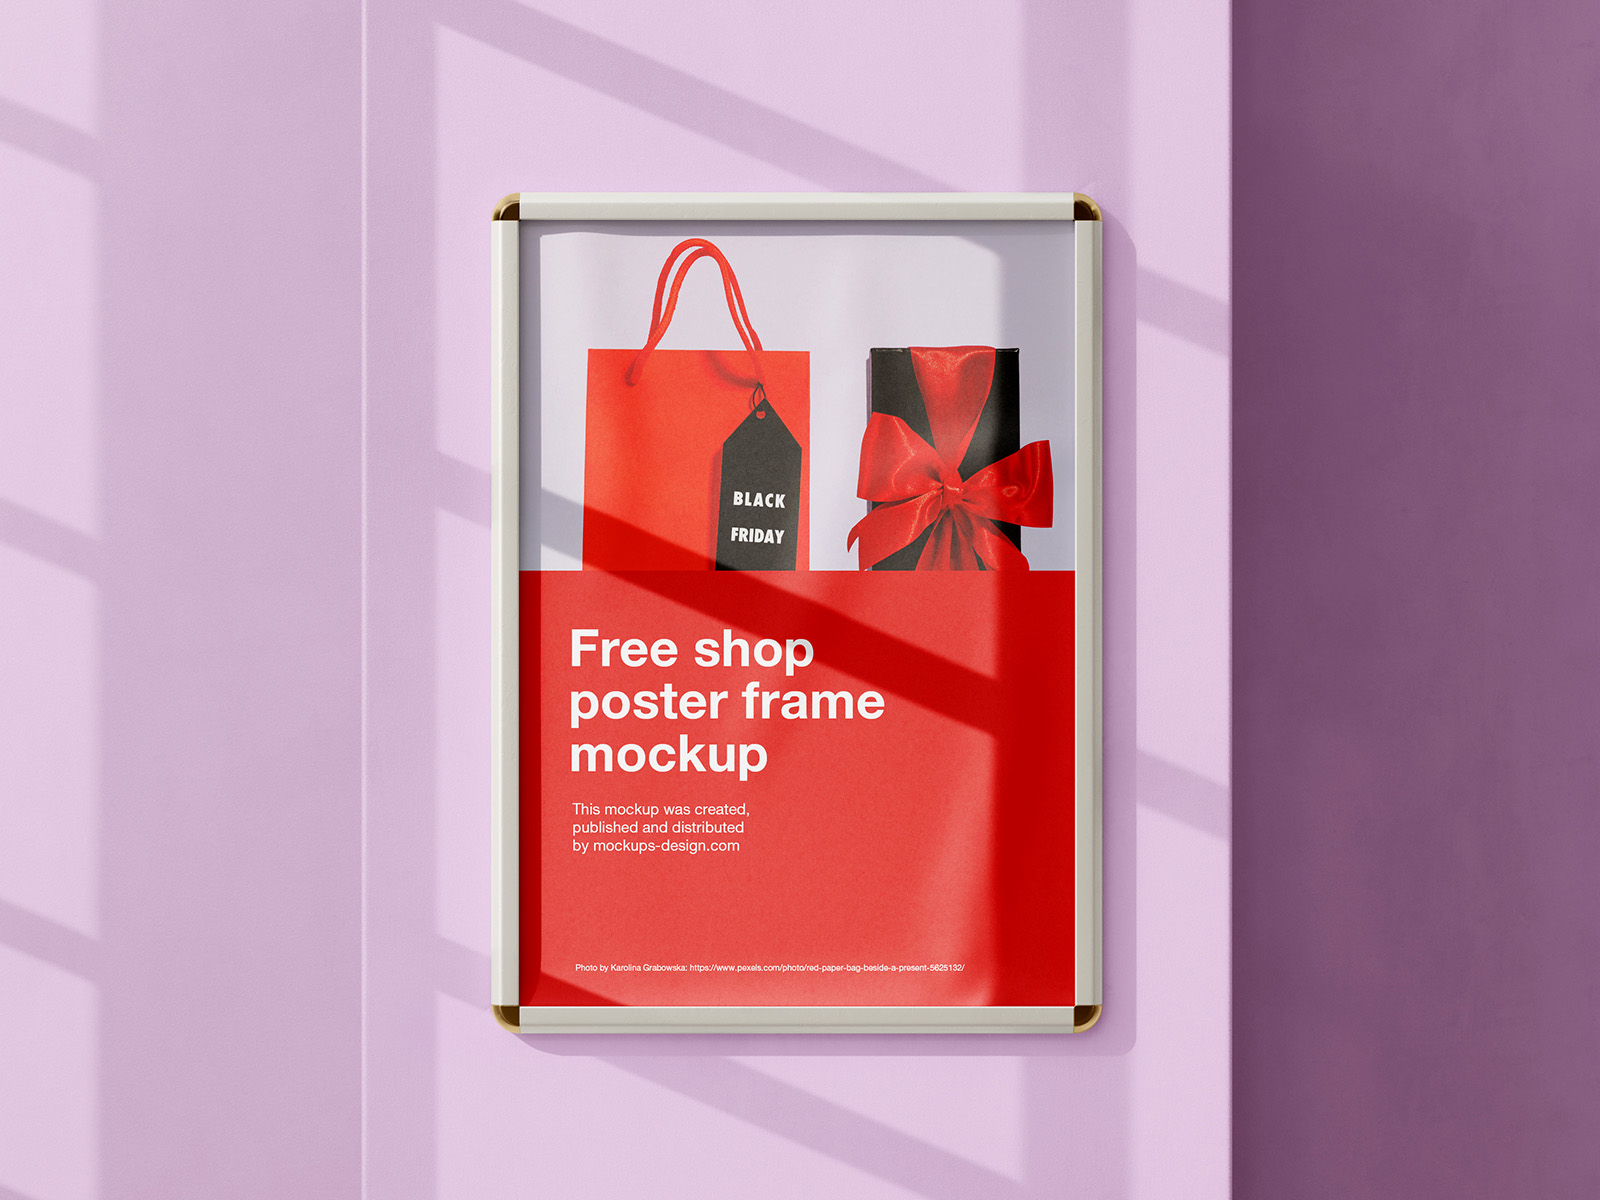 Free shop poster frame mockup